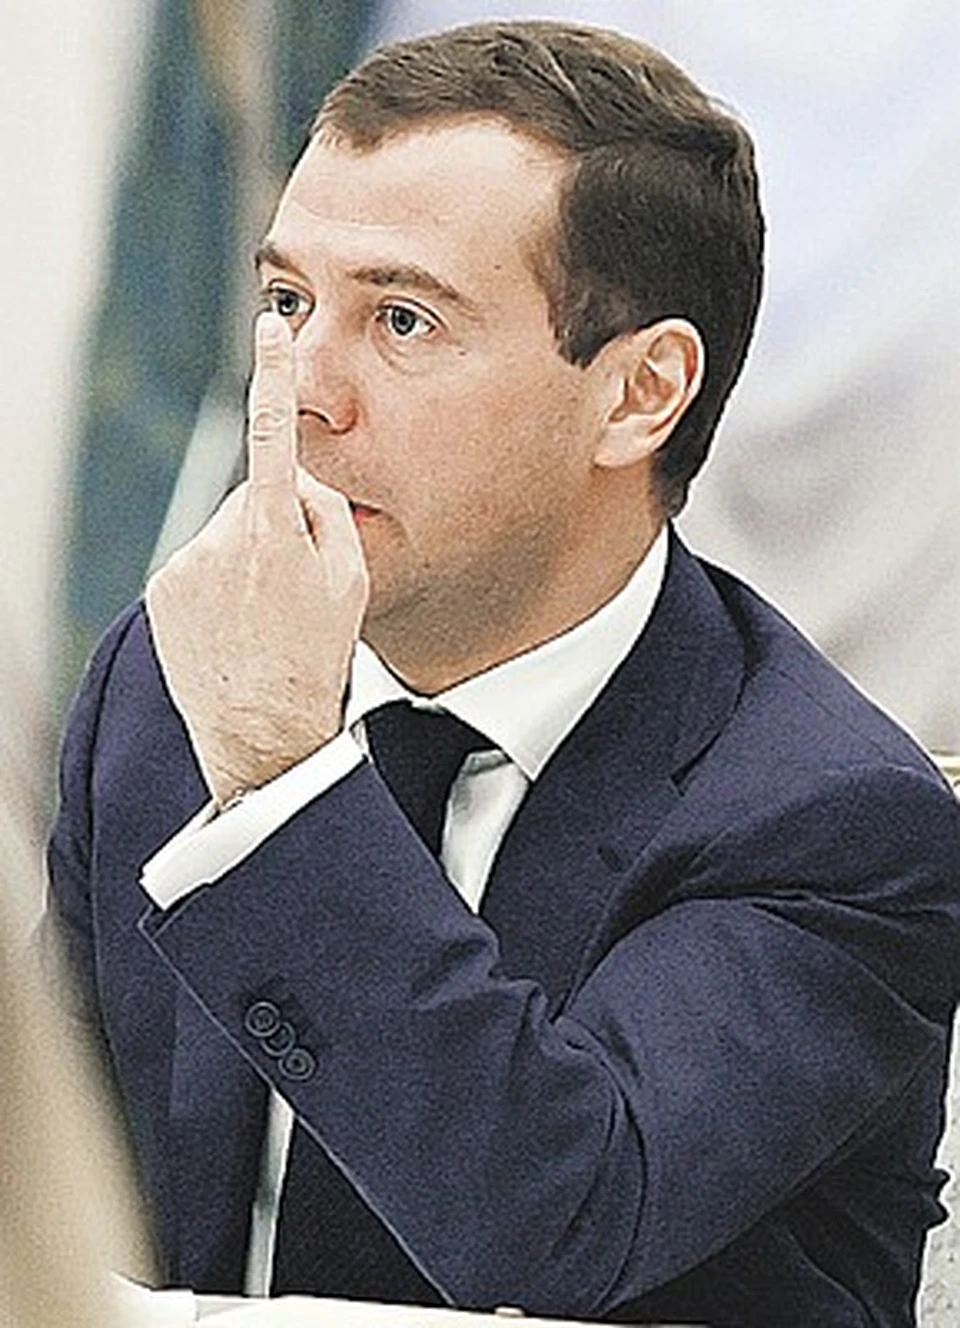 Дмитрий Медведев дал чиновникам на доработку закона одну неделю.